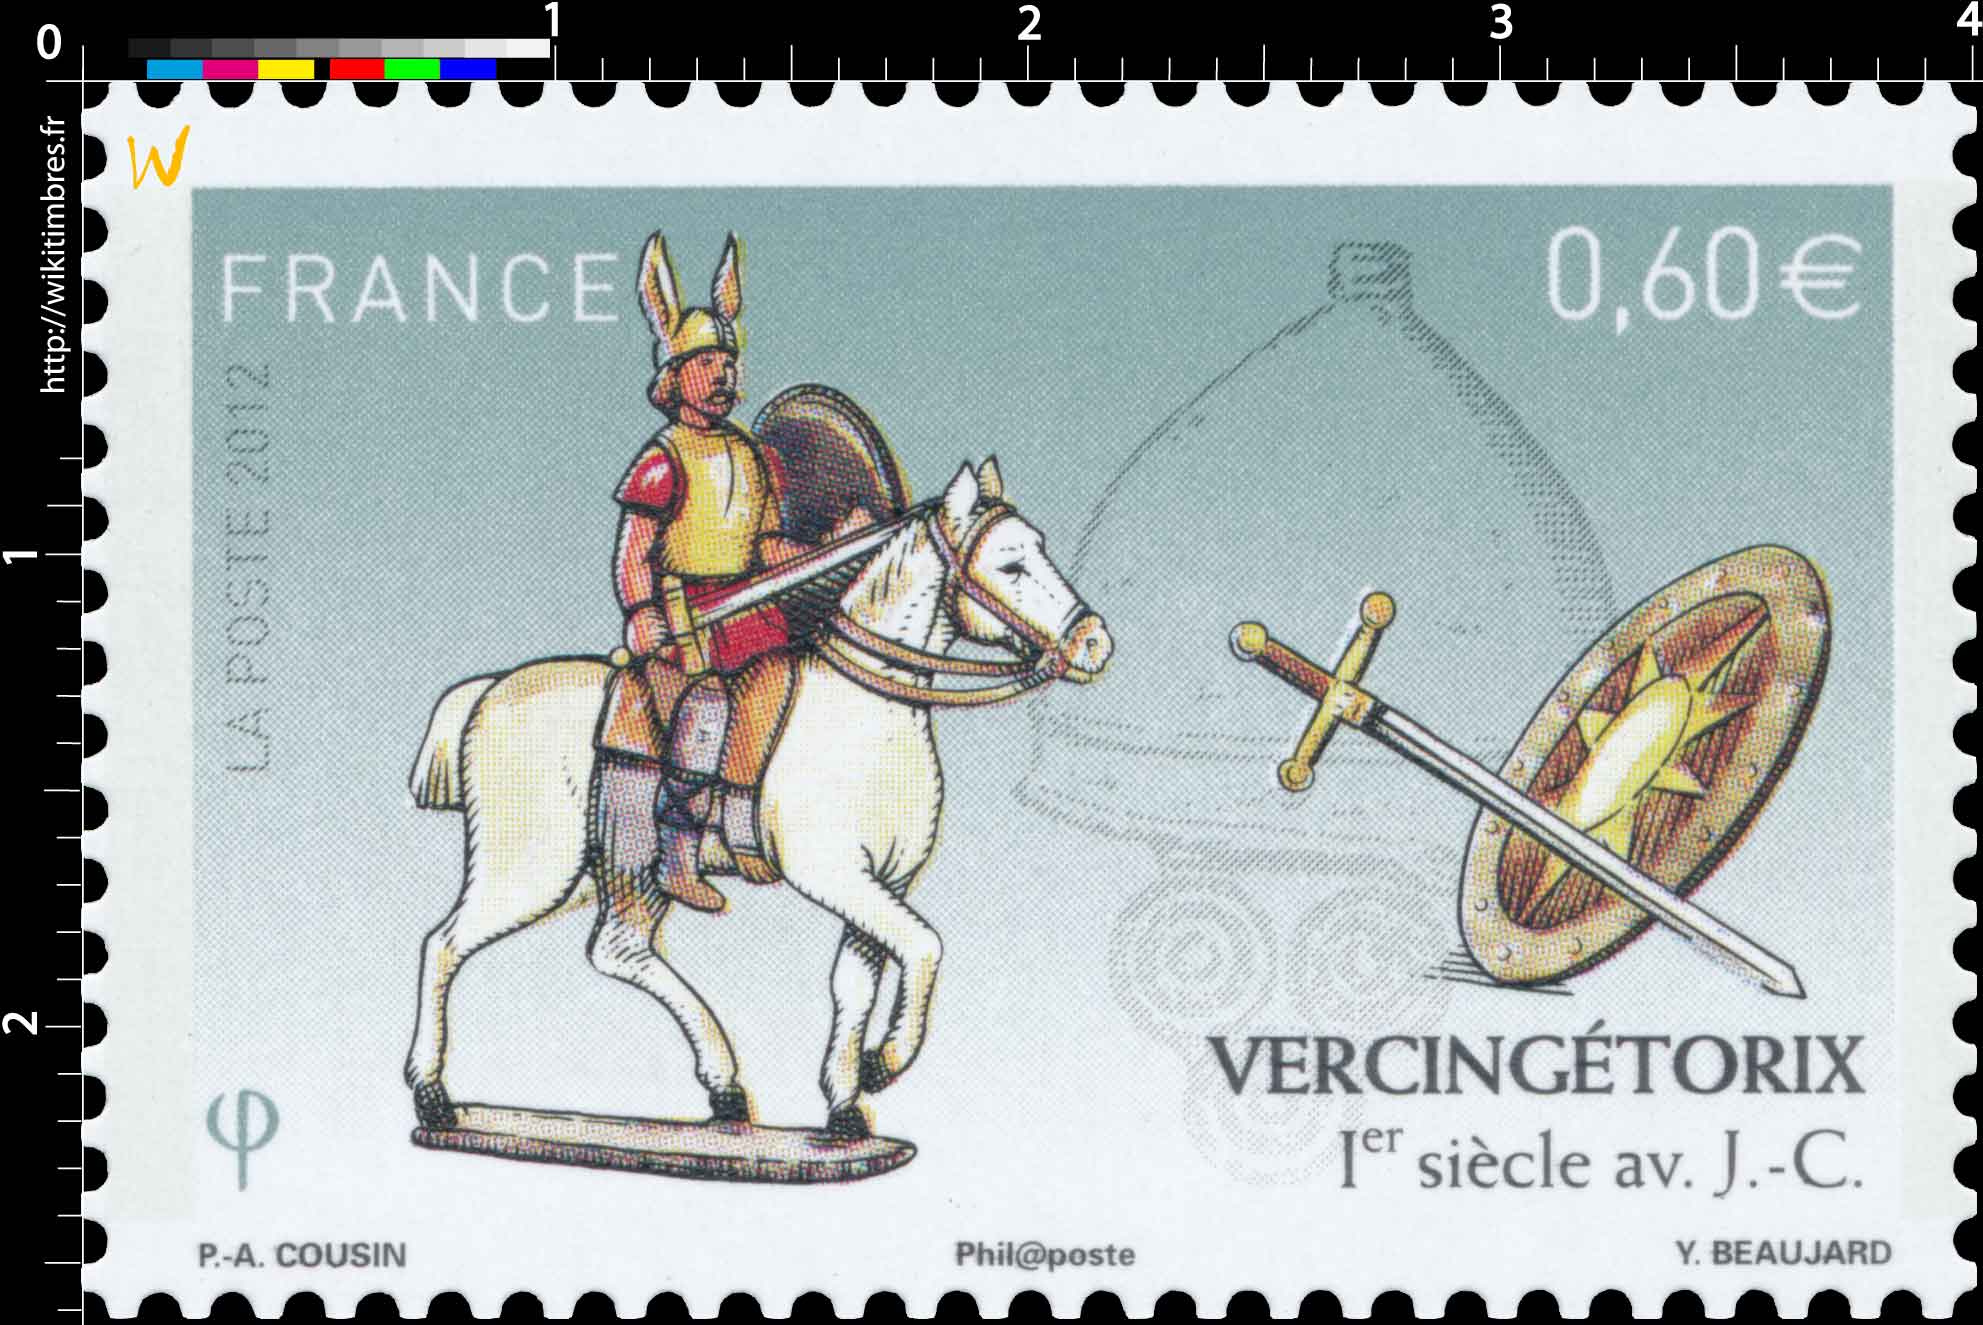 2012 Vercingétorix 1er siècle av. J.C.